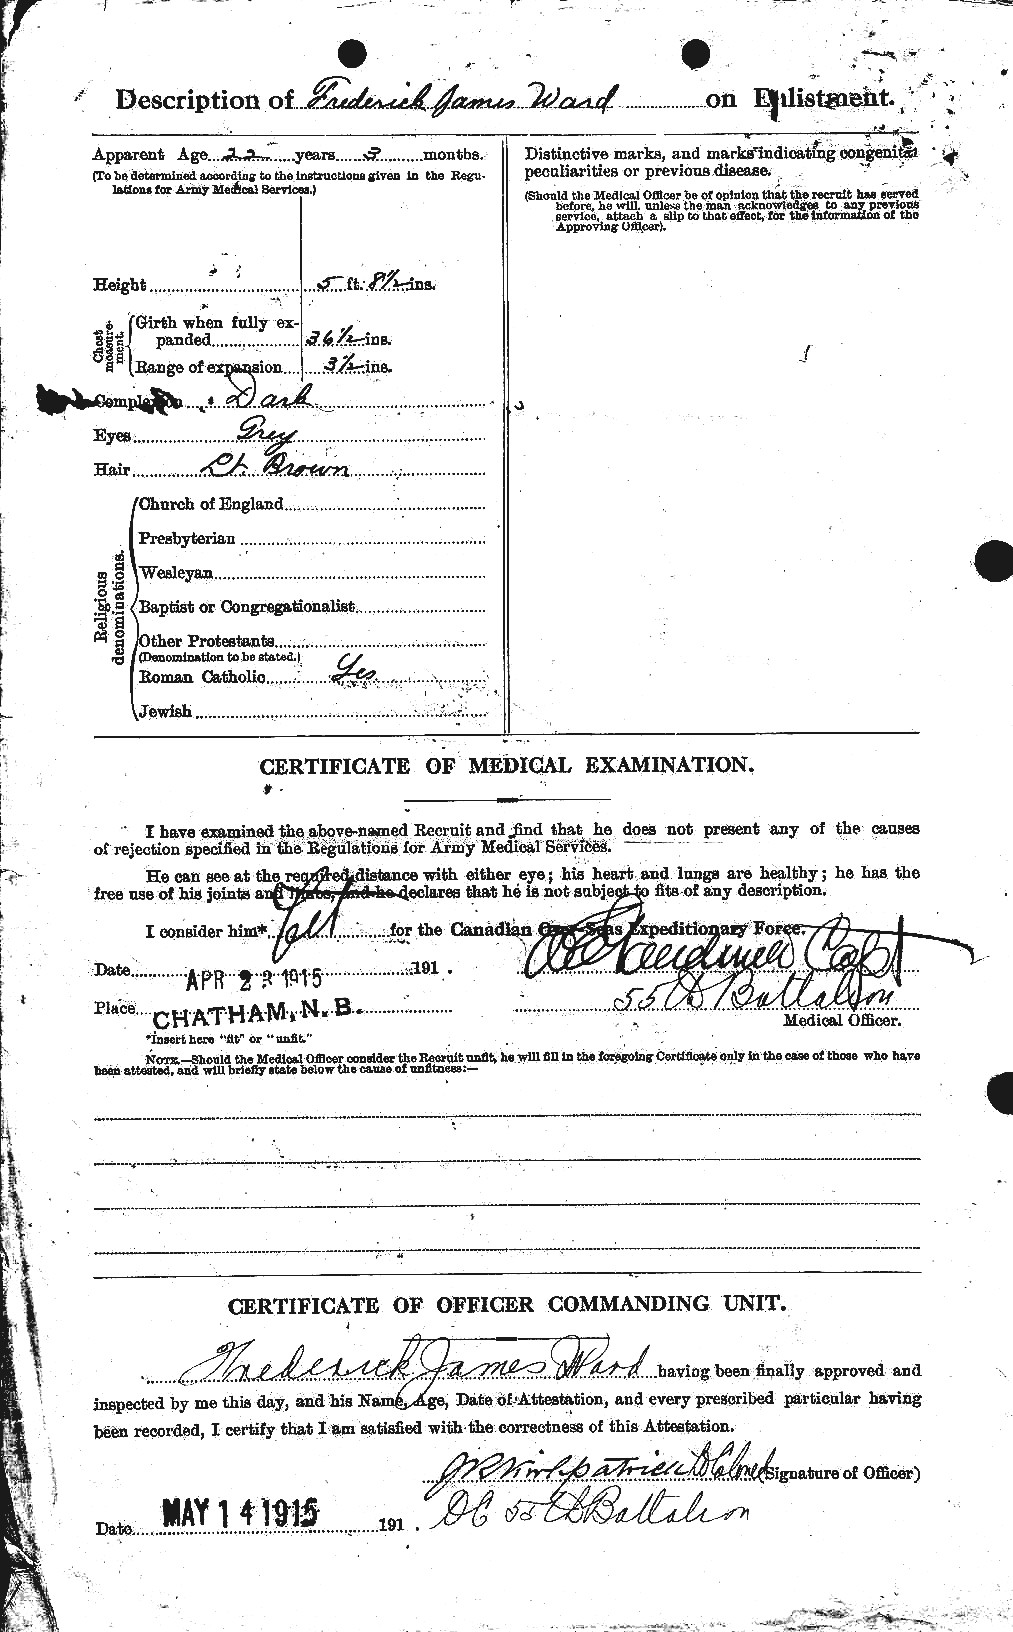 Dossiers du Personnel de la Première Guerre mondiale - CEC 657725b